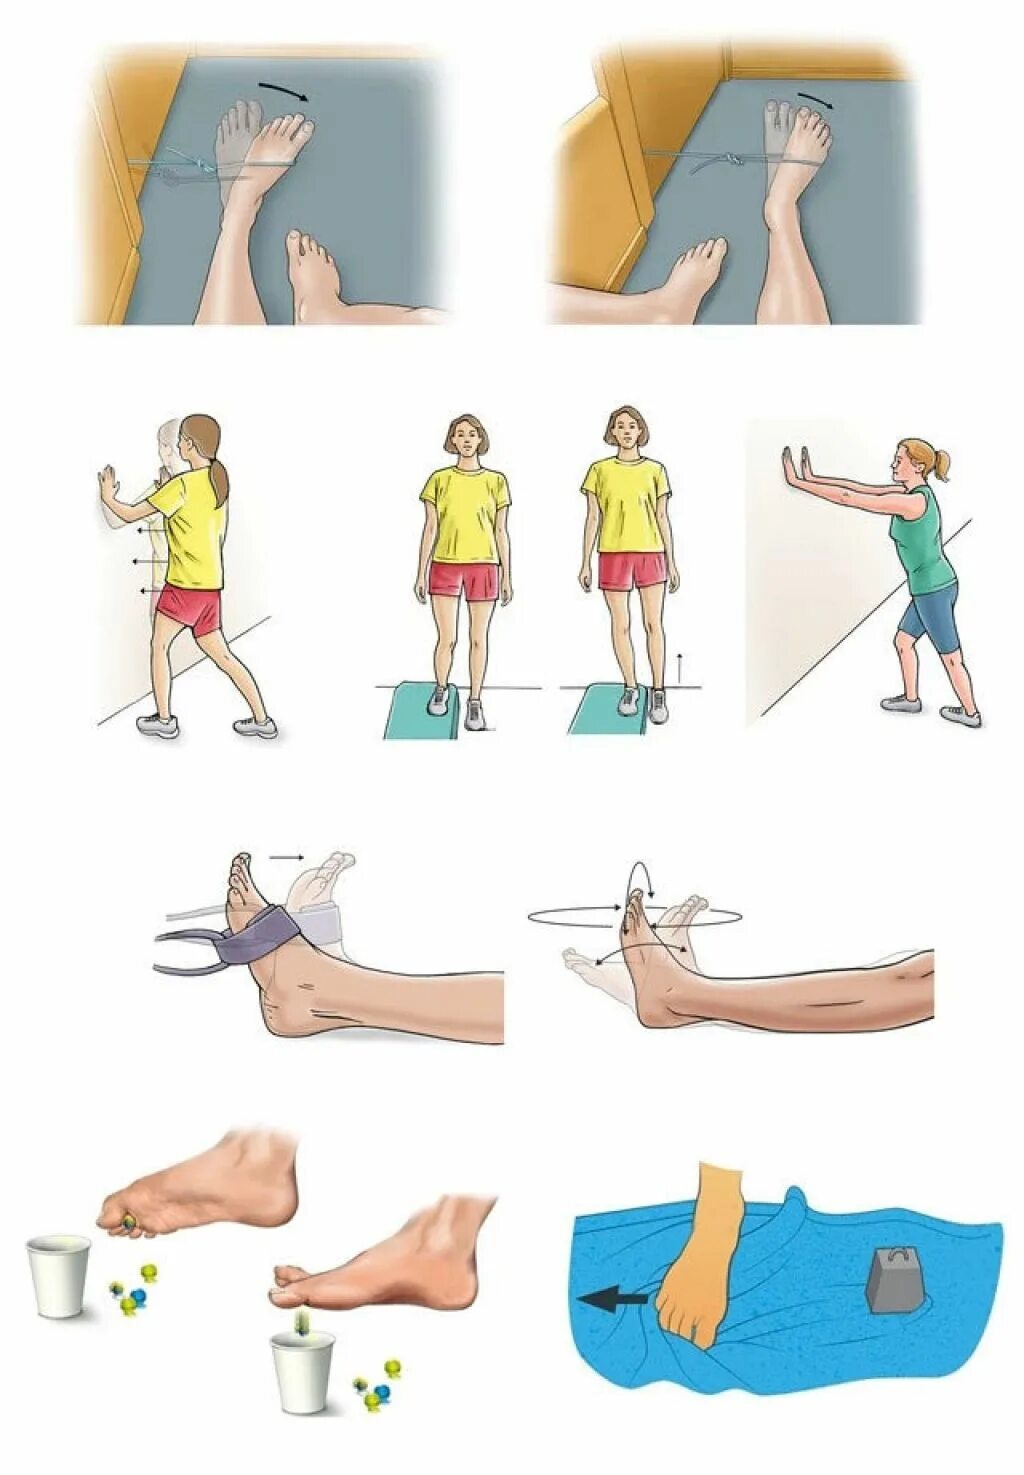 Гимнастика для голеностопного сустава после перелома. Реабилитация после перелома стопы упражнения. Упражнения для реабилитации после перелома плюсневой кости стопы. Упражнения для разрабатывания стопы после перелома.